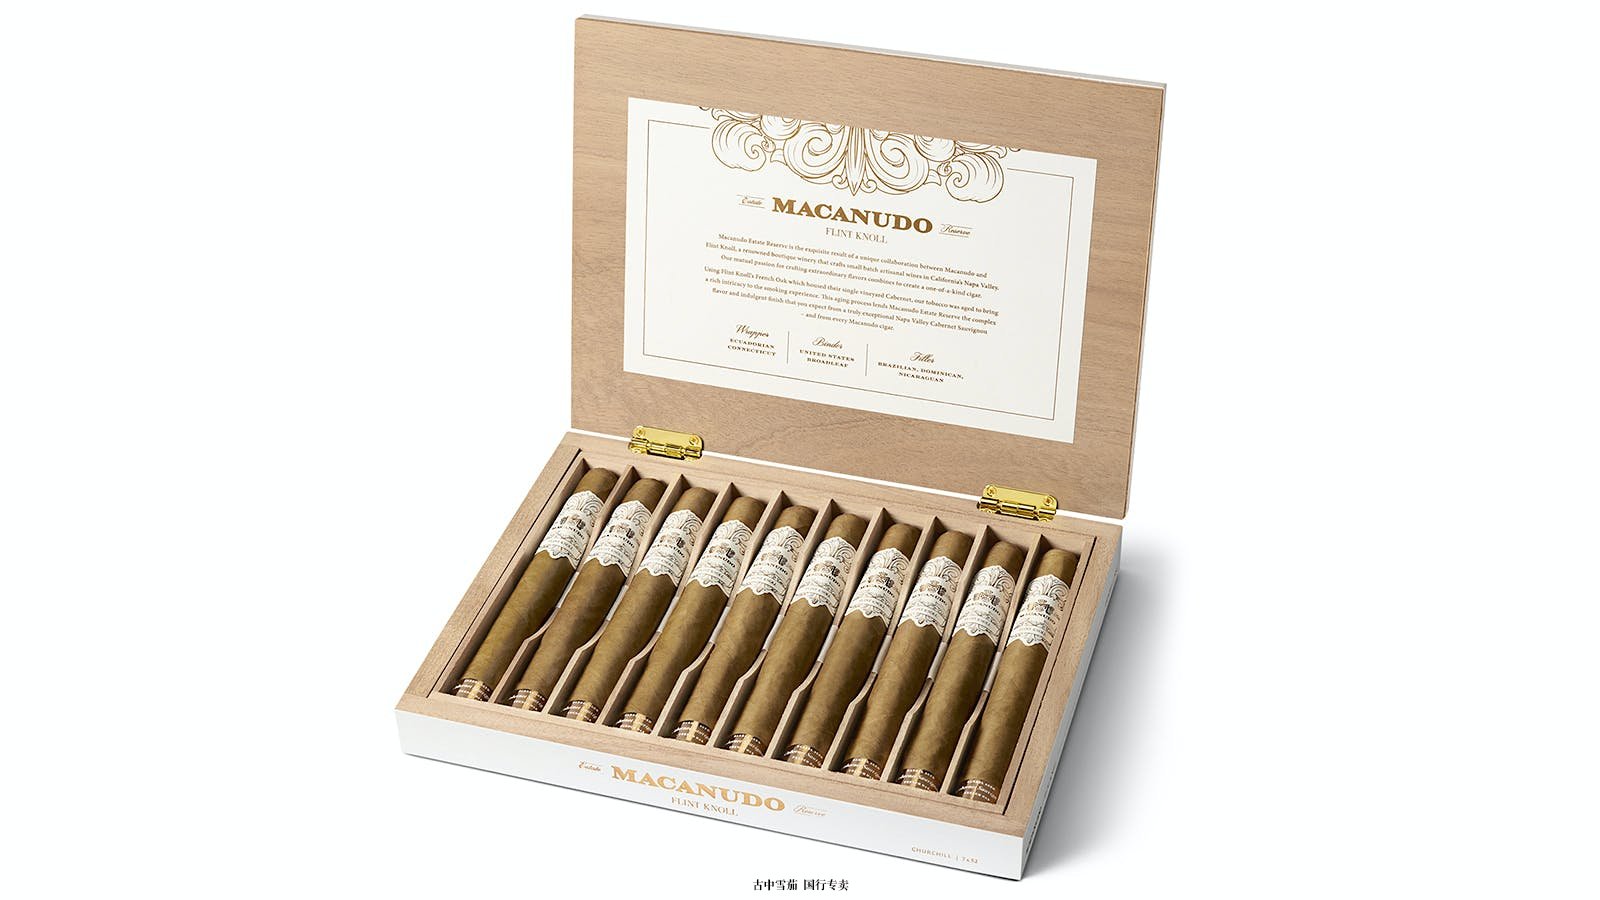 马卡努多 (Macanudo) 与弗林特诺尔酒庄 (Flint Knoll Winery) 合作生产雪茄